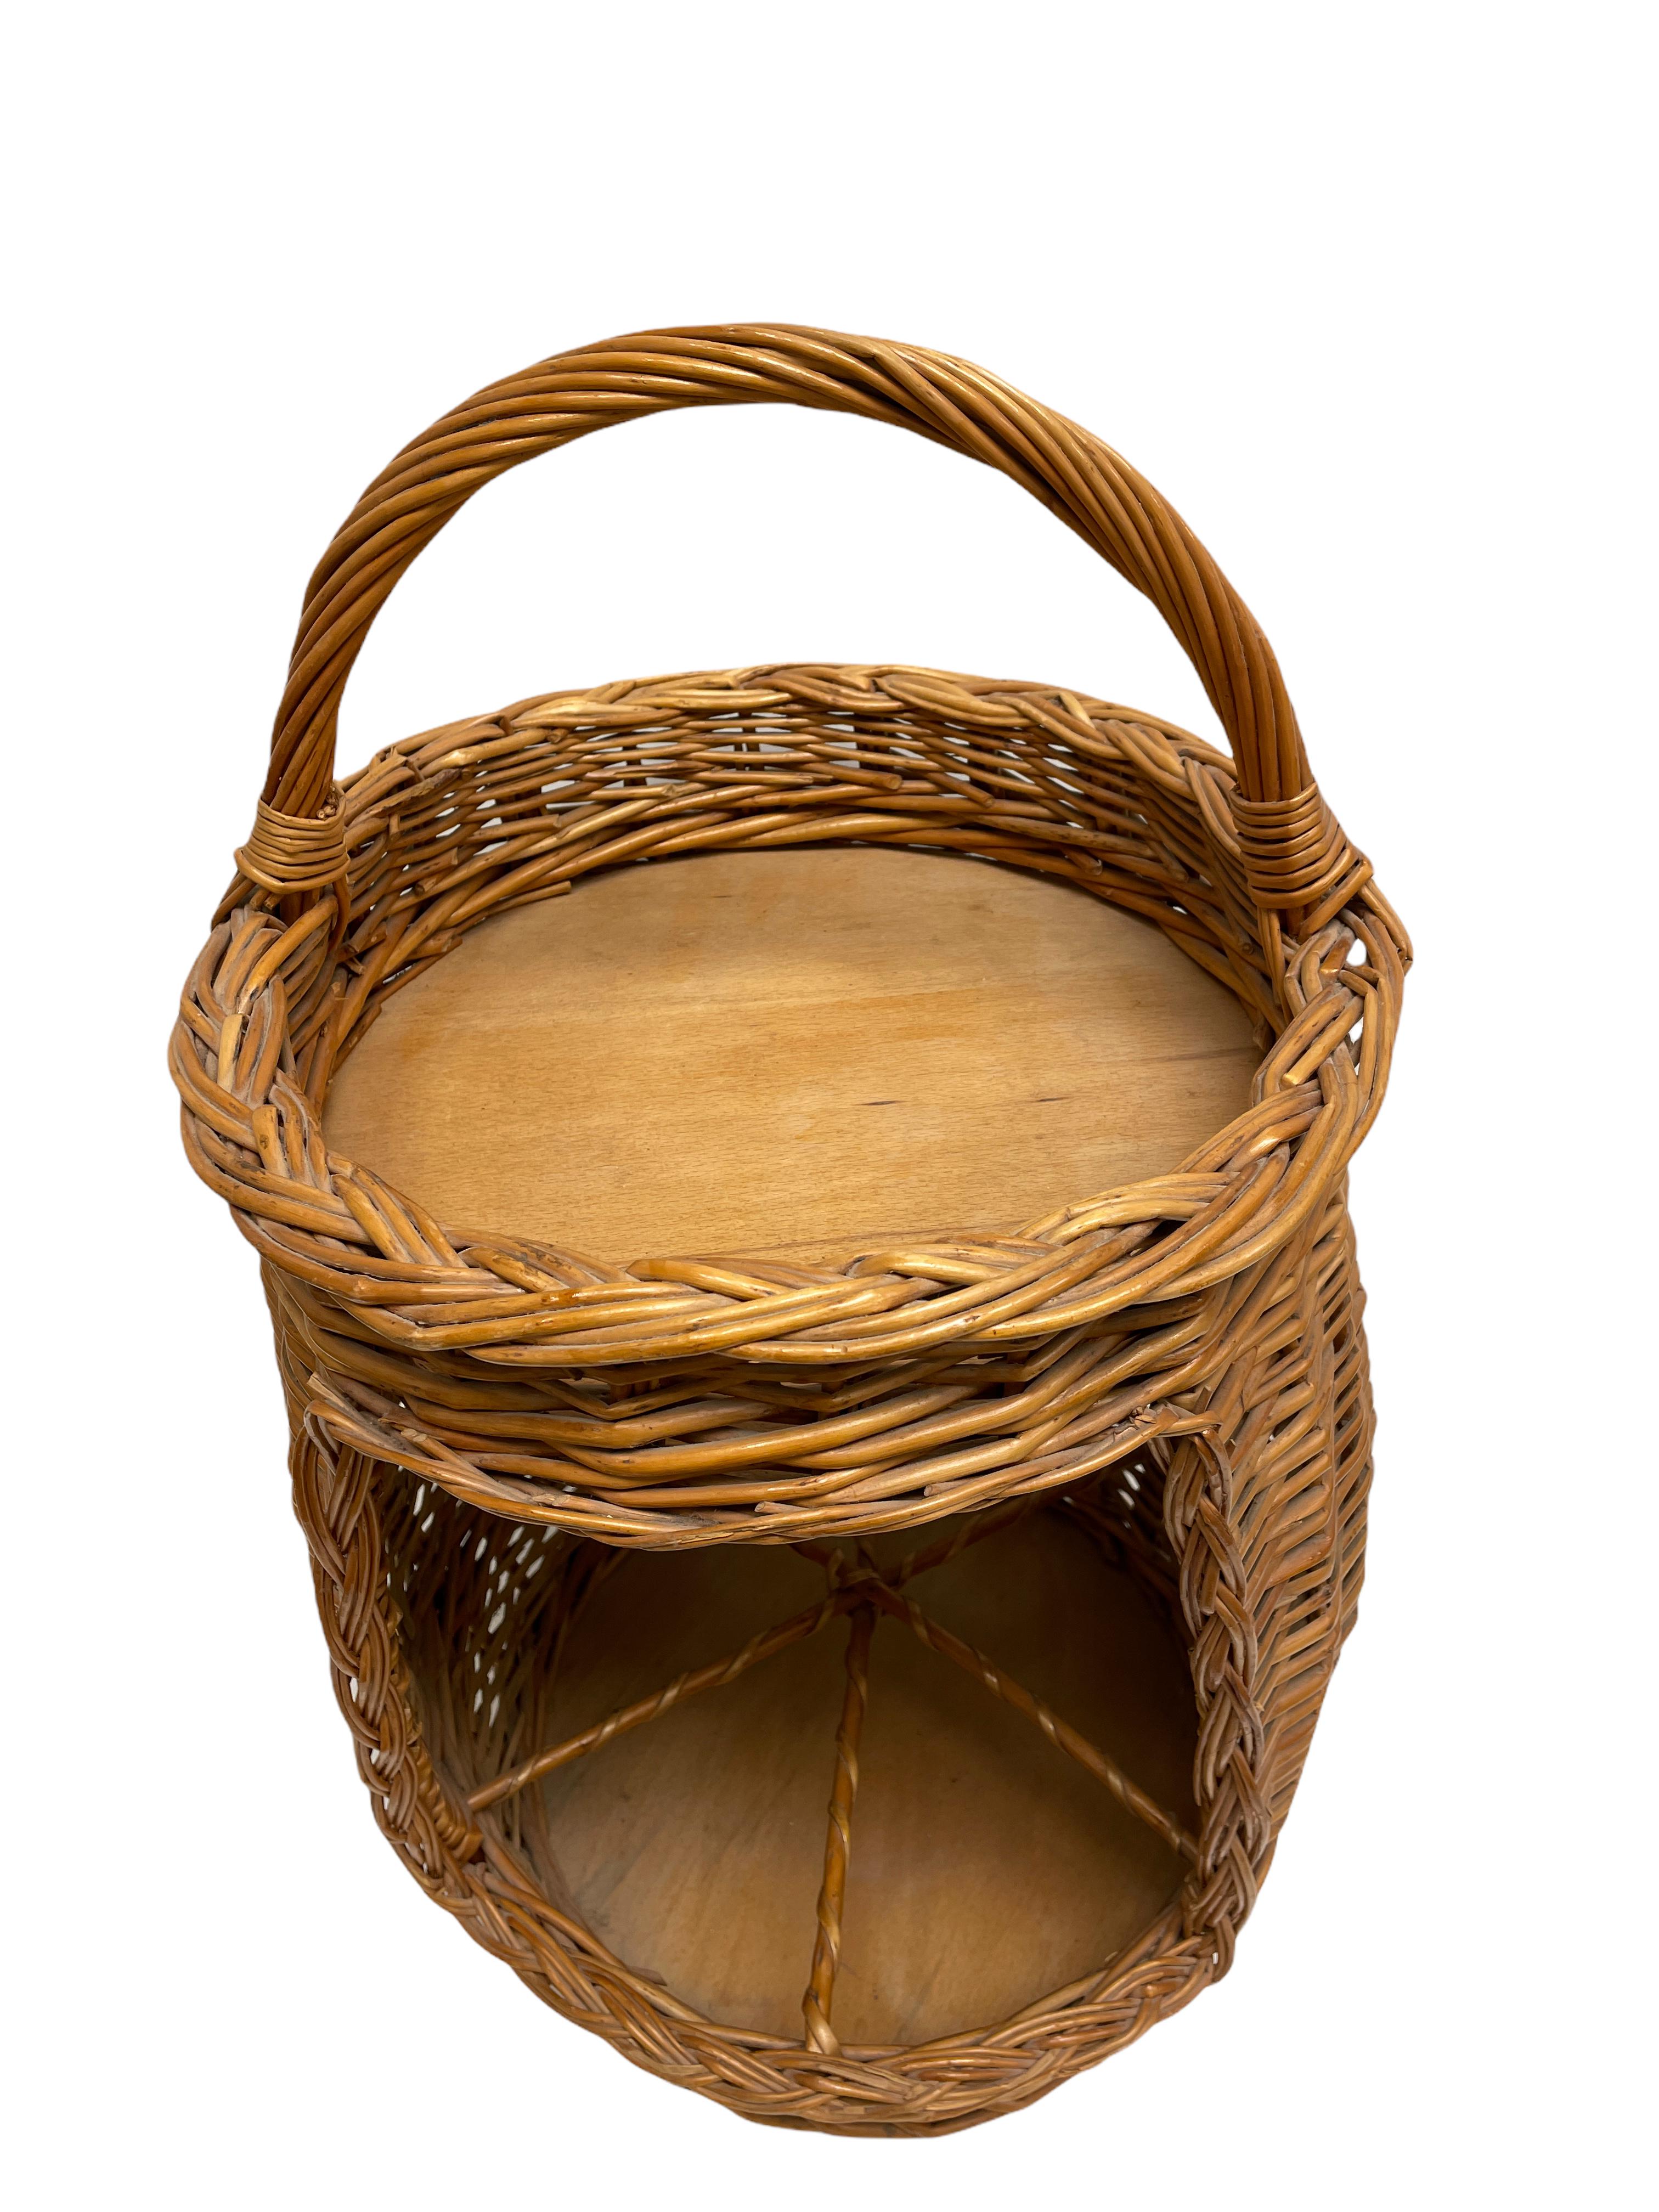 thomasville wicker baskets